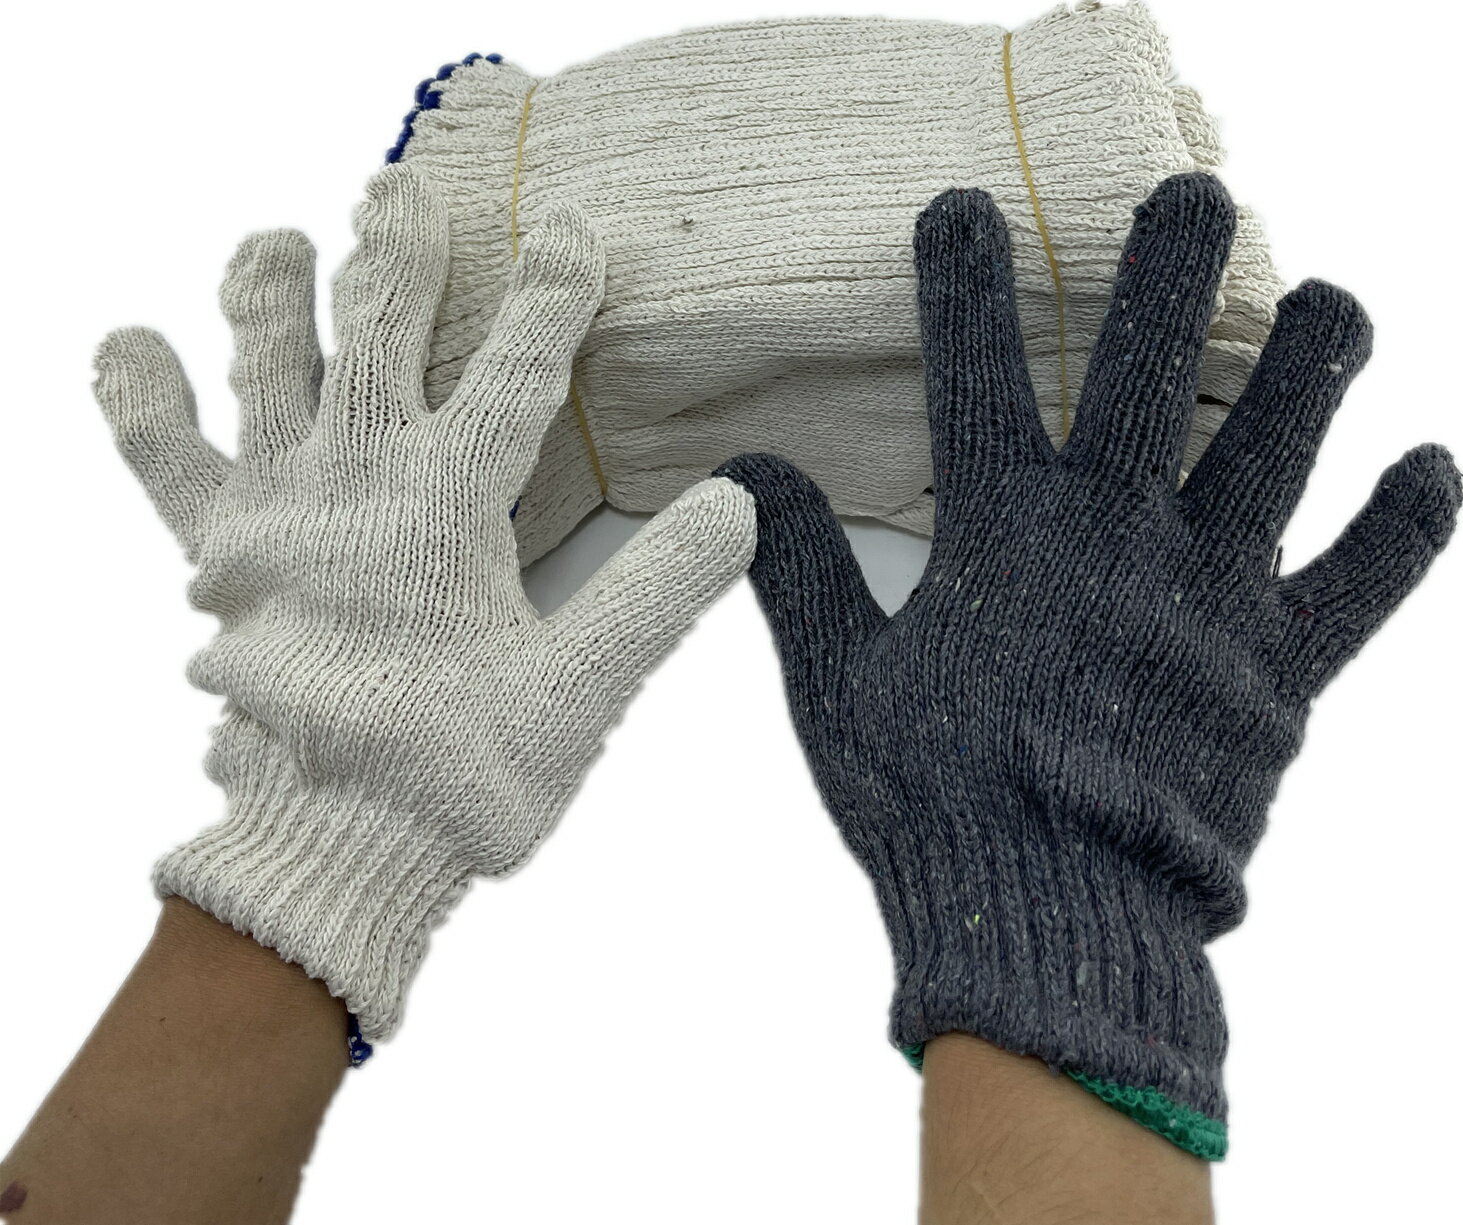 棉紗手套(20兩)1打6雙 台灣製造工作手套 土木工程手套 作業手套 萬用棉紗手套 工地手套 園藝手套 綿紗手套 耐磨耐用 現貨(伊凡卡百貨)